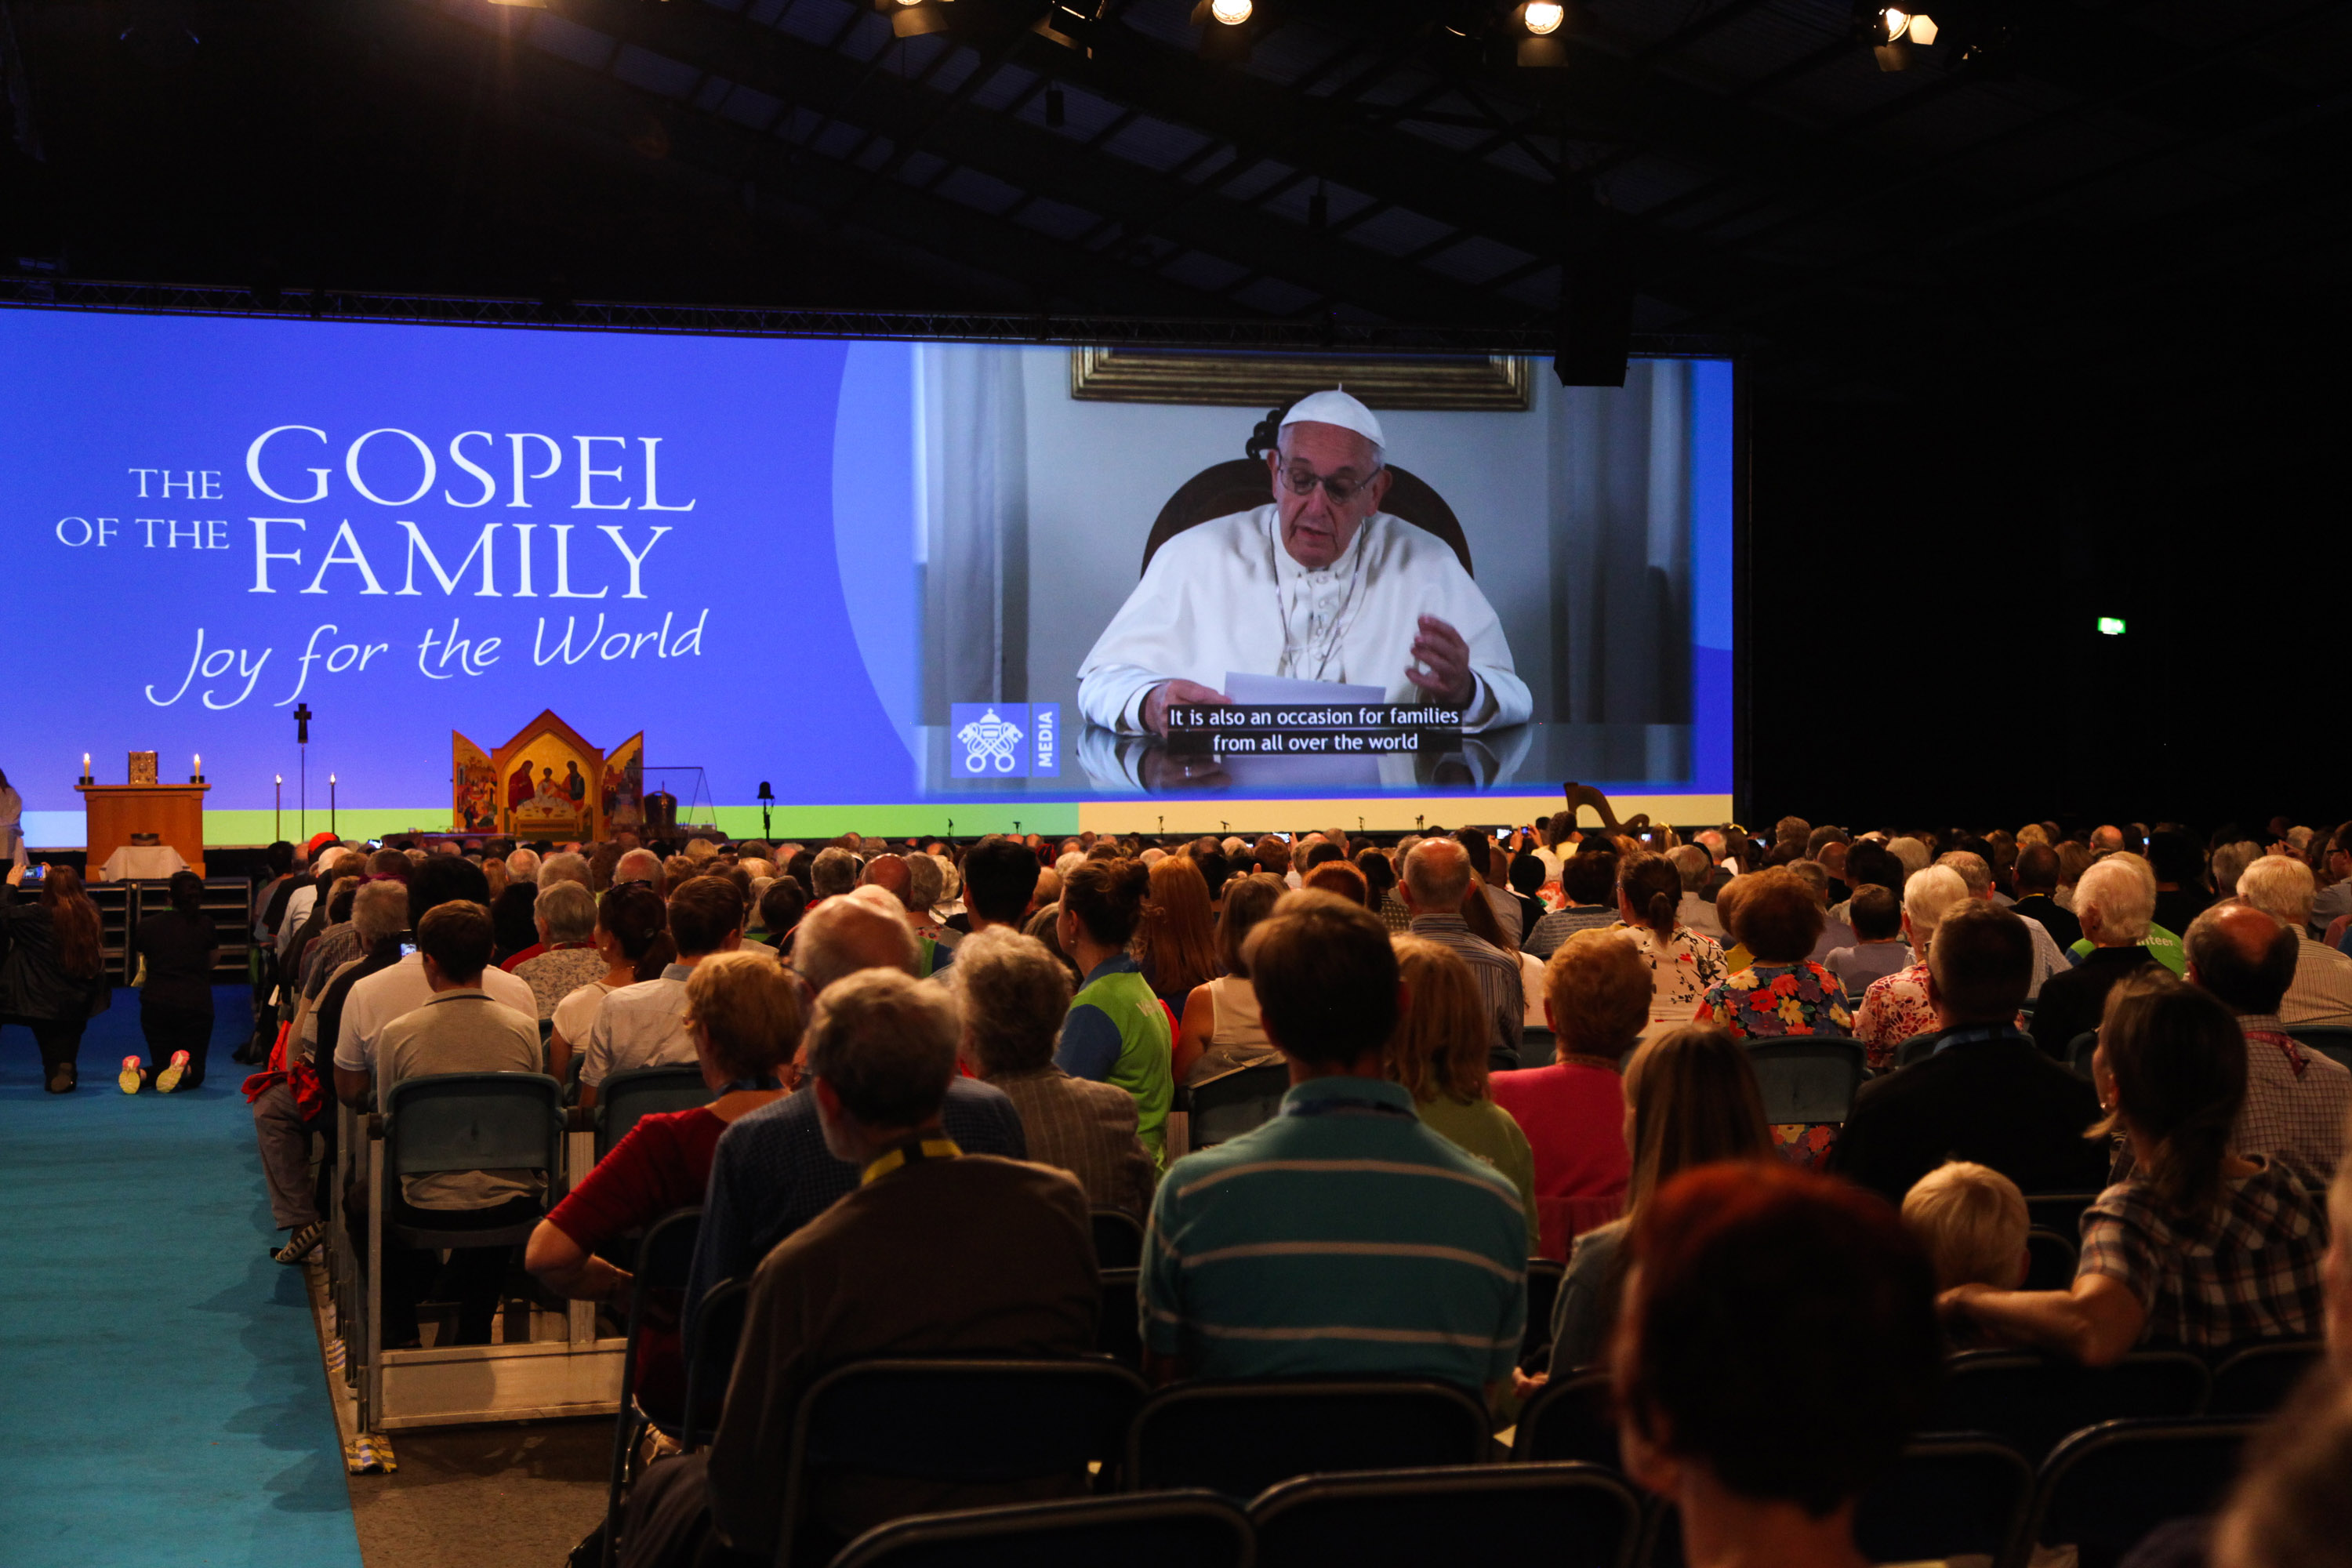 Các tham dự viên theo dõi Đức Thánh Cha Phanxicô trên màn hình trong lễ khai mạc Đại hội Gia đình Thế giới tại Dublin vào ngày 21 tháng 8 năm 2018. (Ảnh: CNS / John McElroy, Đại hội Gia đình Thế giới)